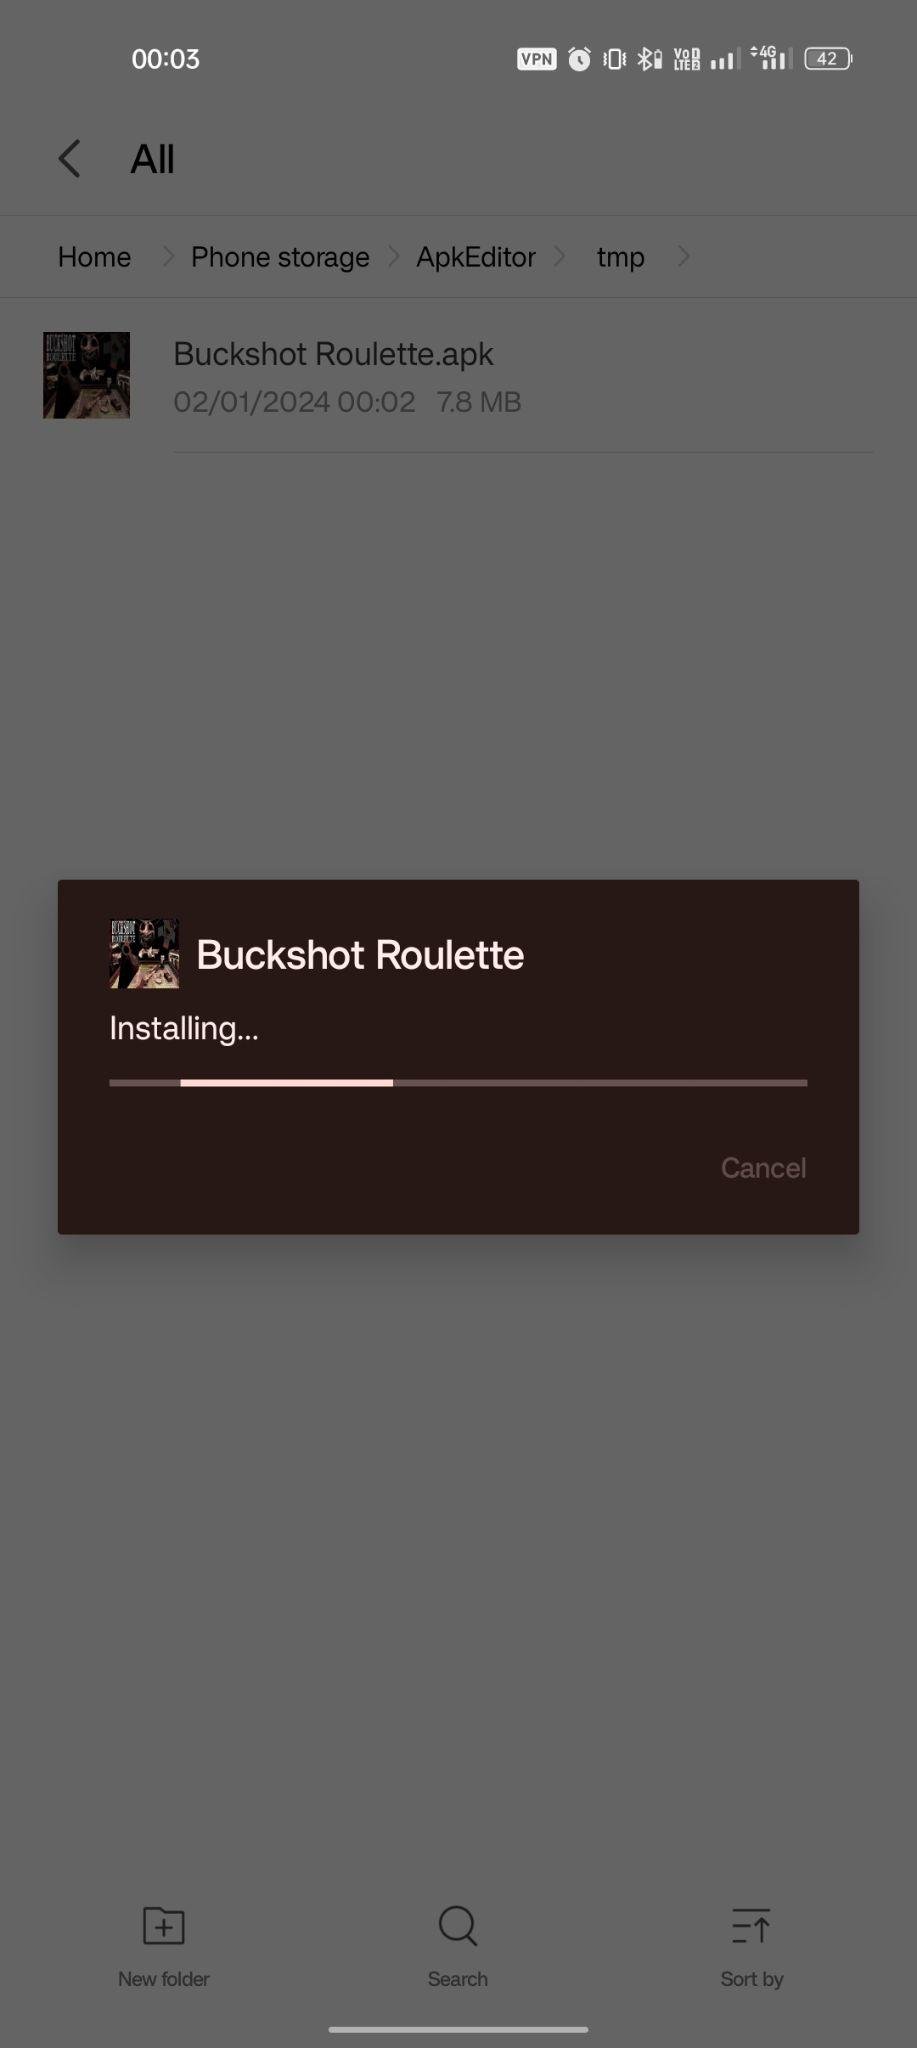 Buckshot Roulette apk installing